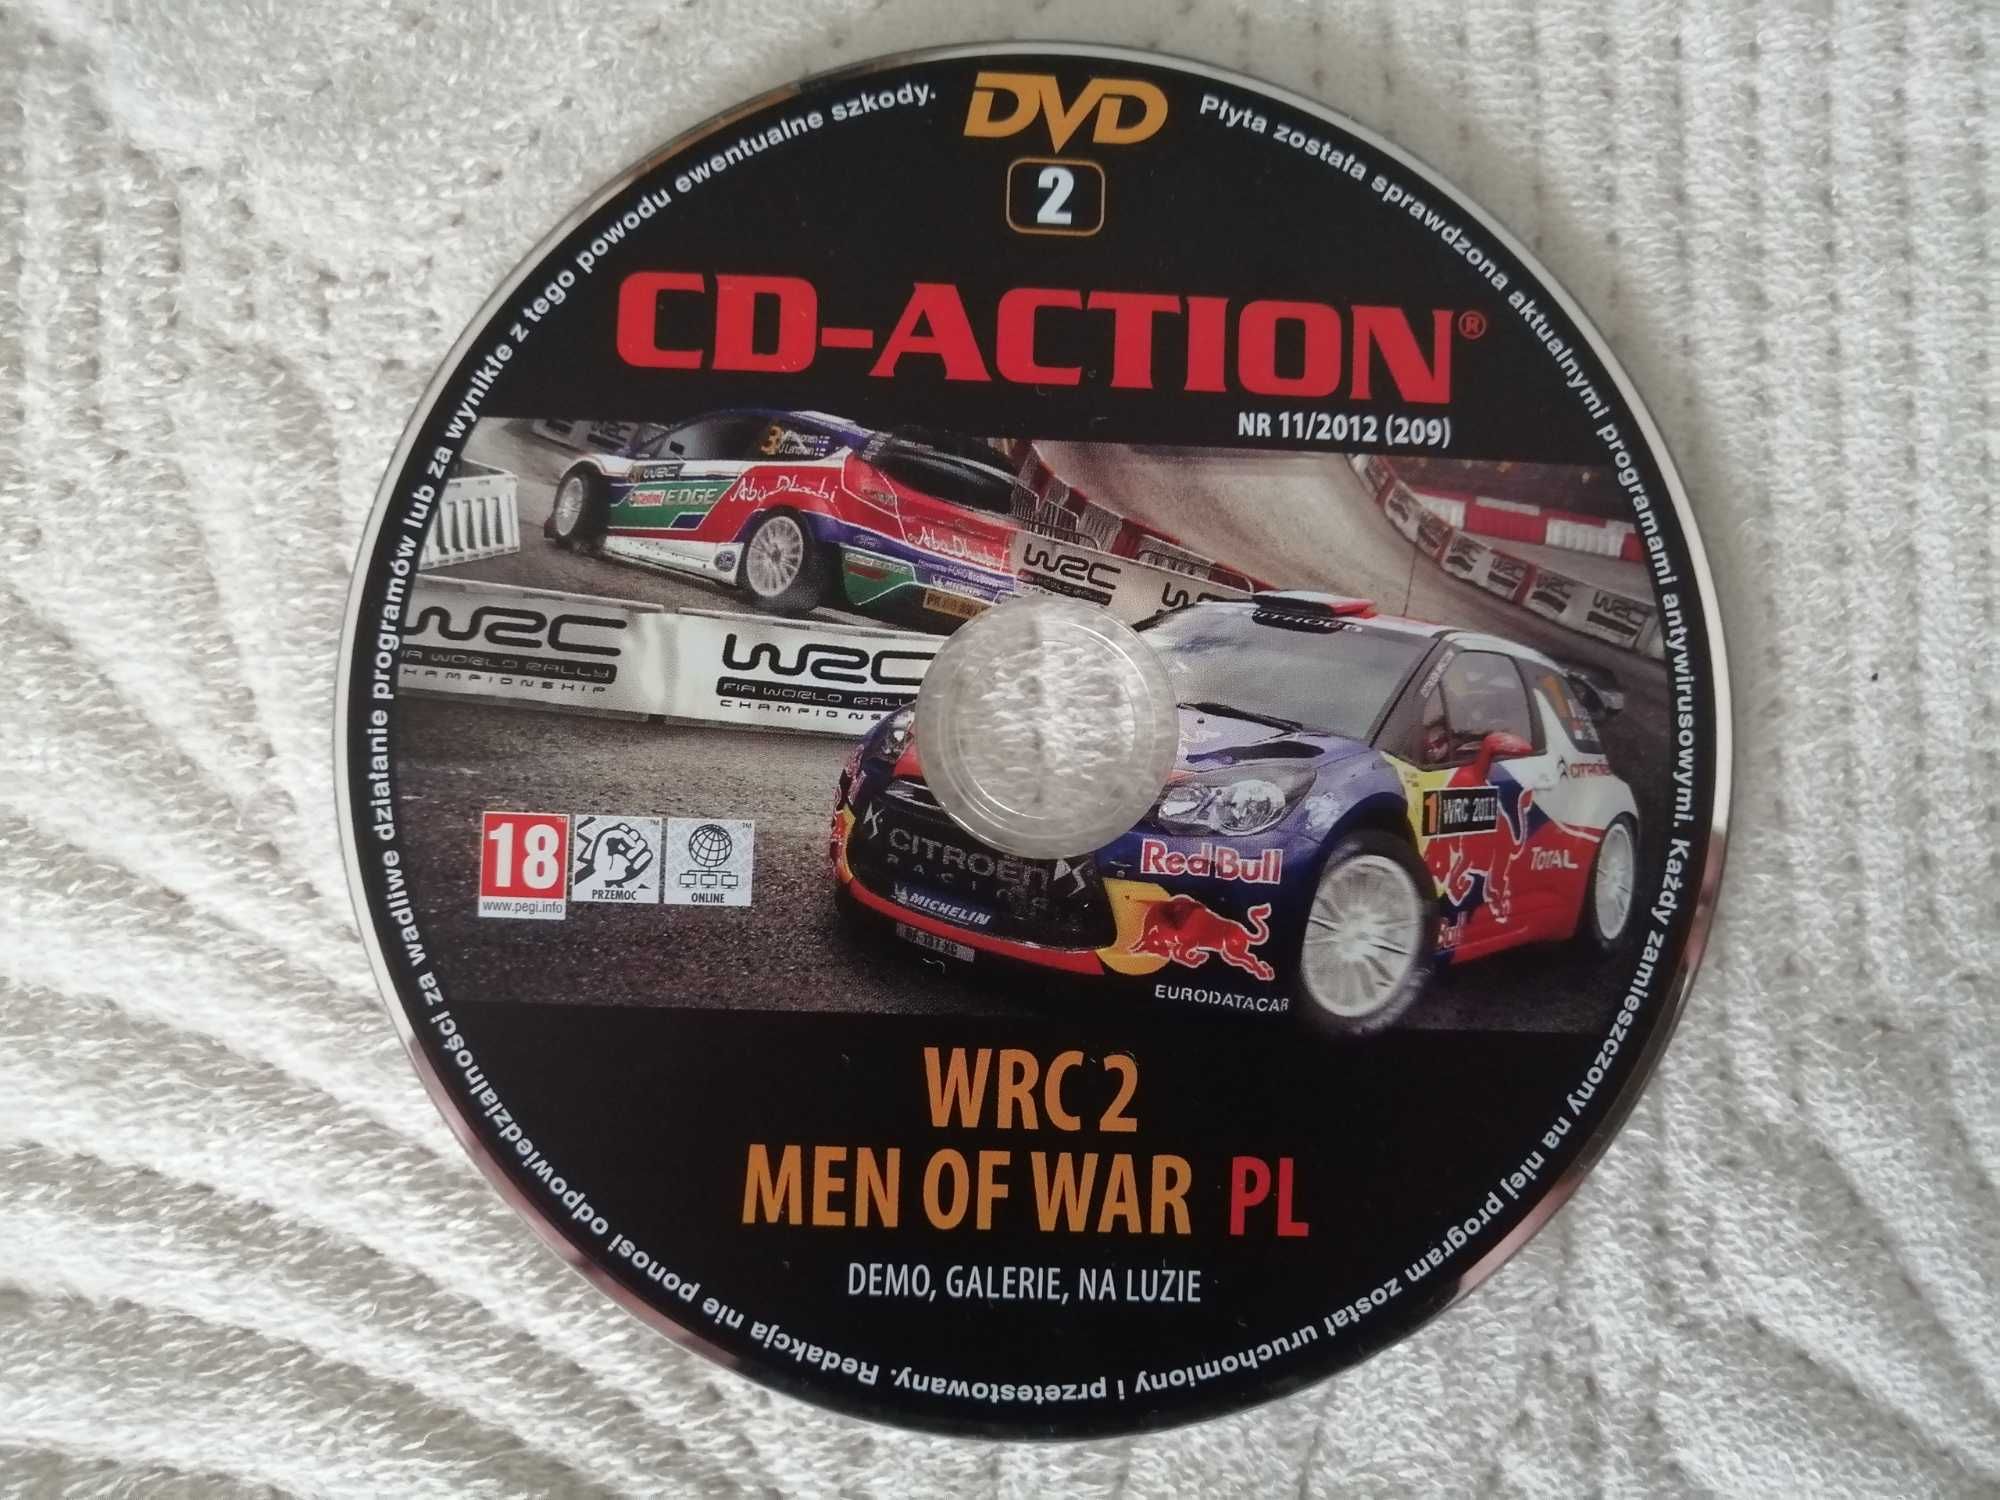 WRC 2 Gra PC (Wyścigi) / Men of War Gra PC (Strategia)